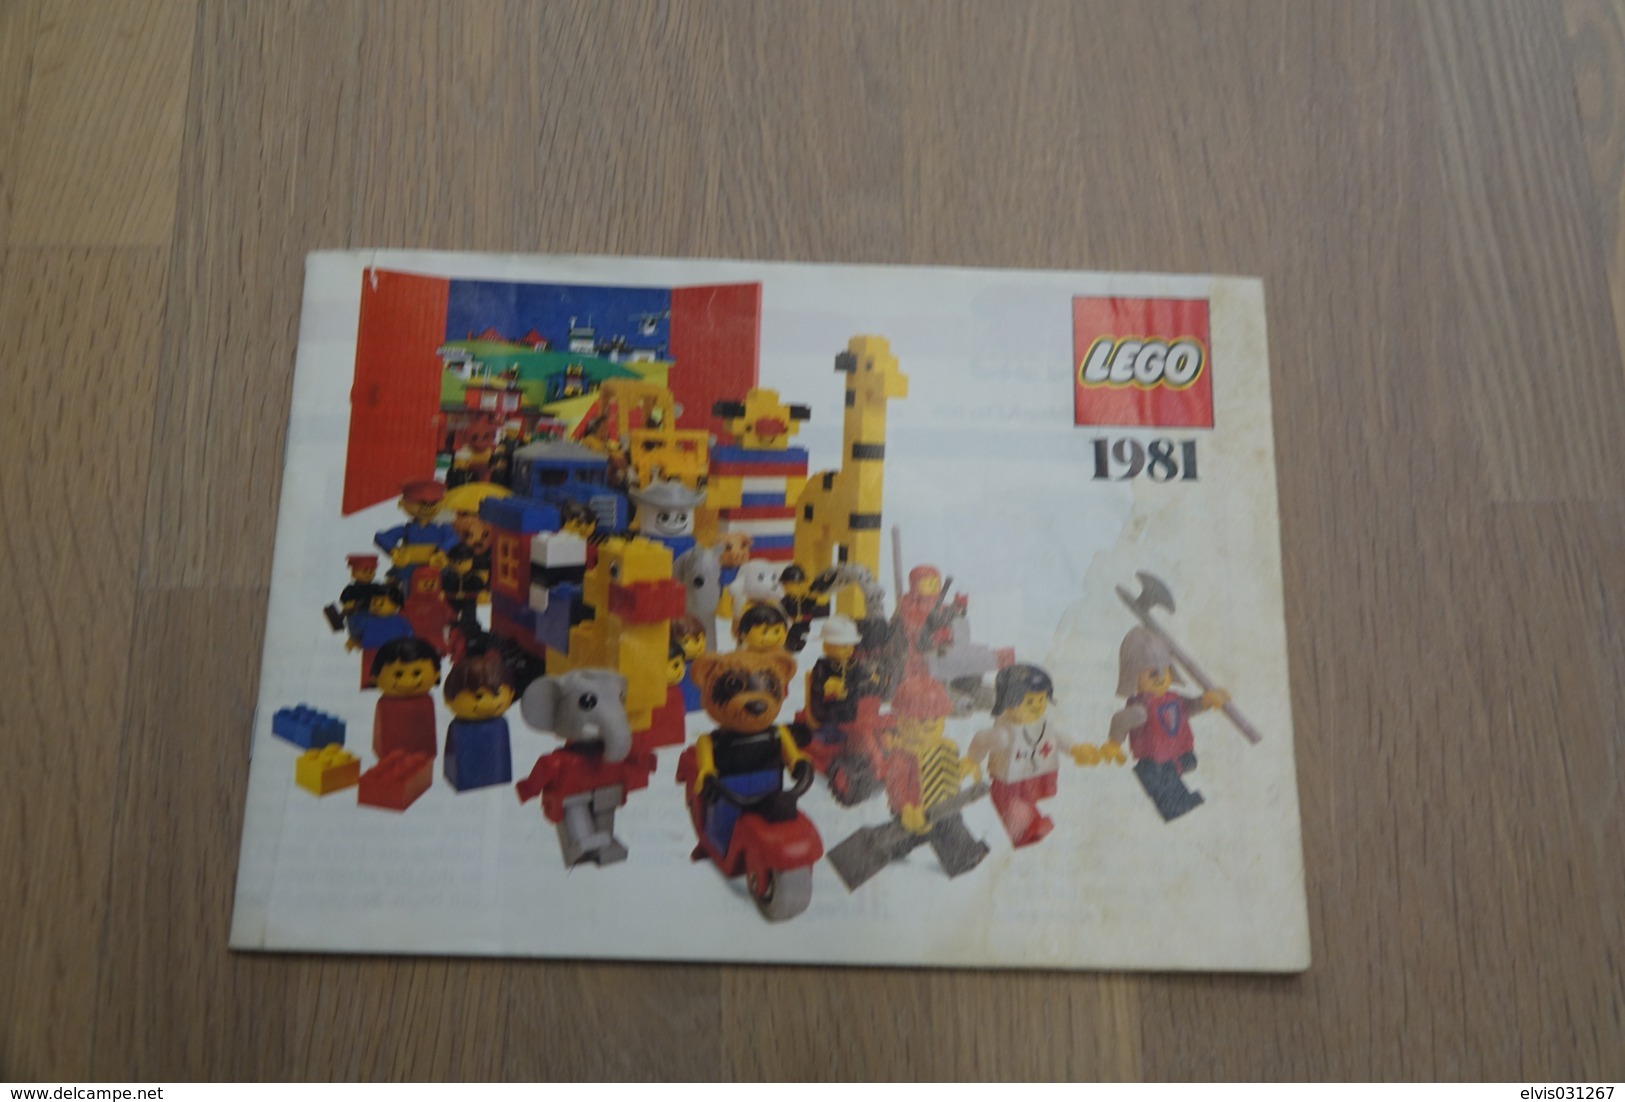 LEGO - CATALOG 1981 - Original Lego 1981 - Vintage - EN - Big - Kataloge